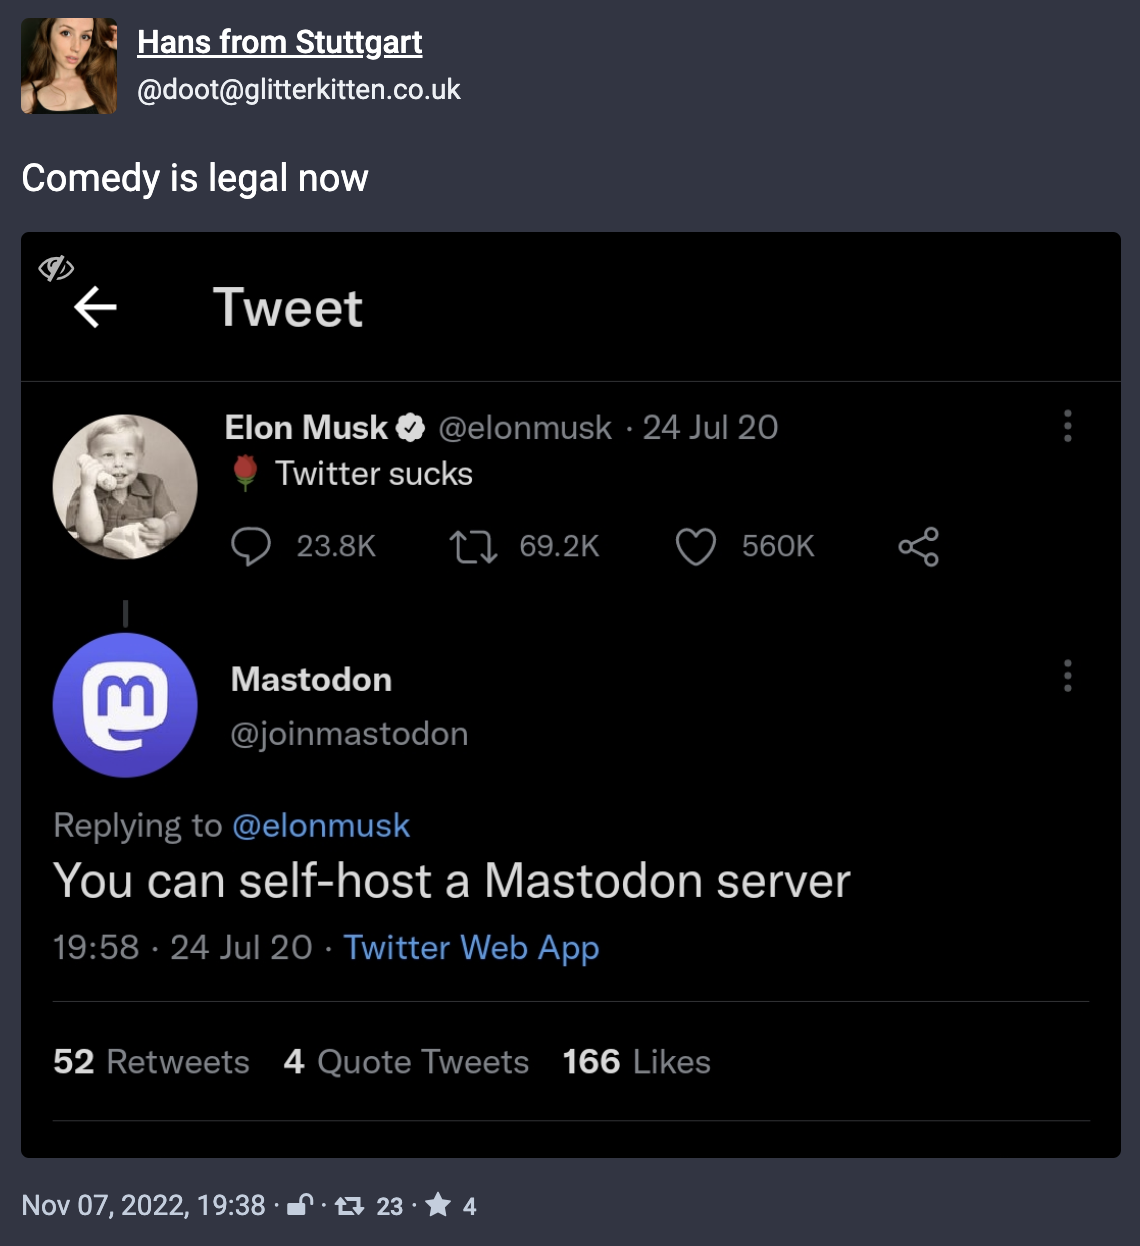 Elon Musk Mastodon Tweet